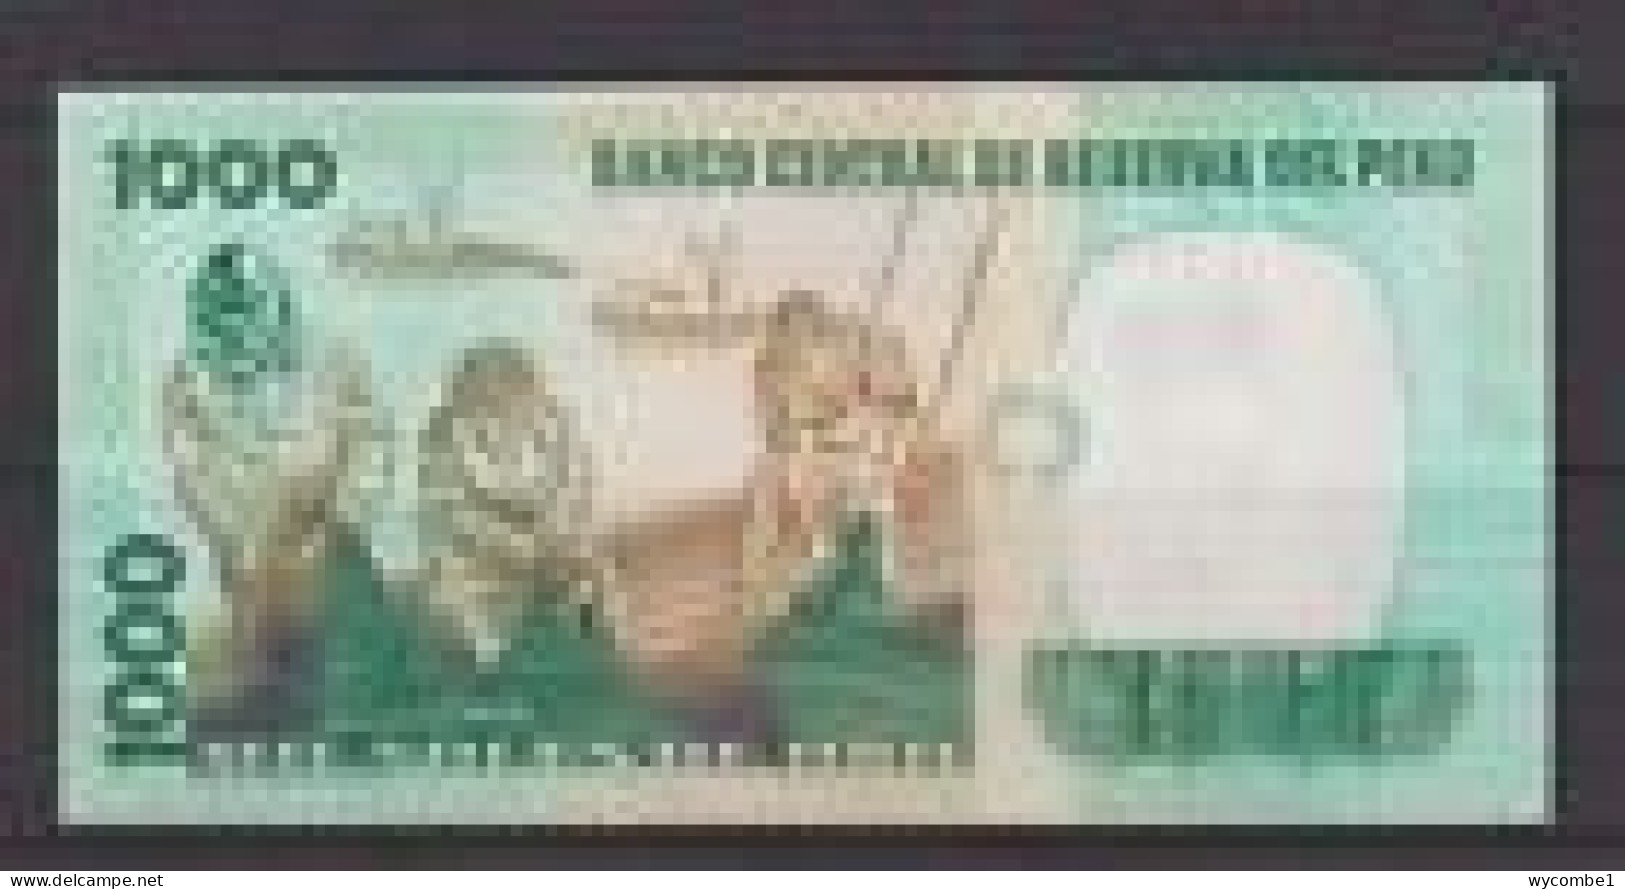 PERU - 1981 1000 Sol Circulated Banknote - Peru